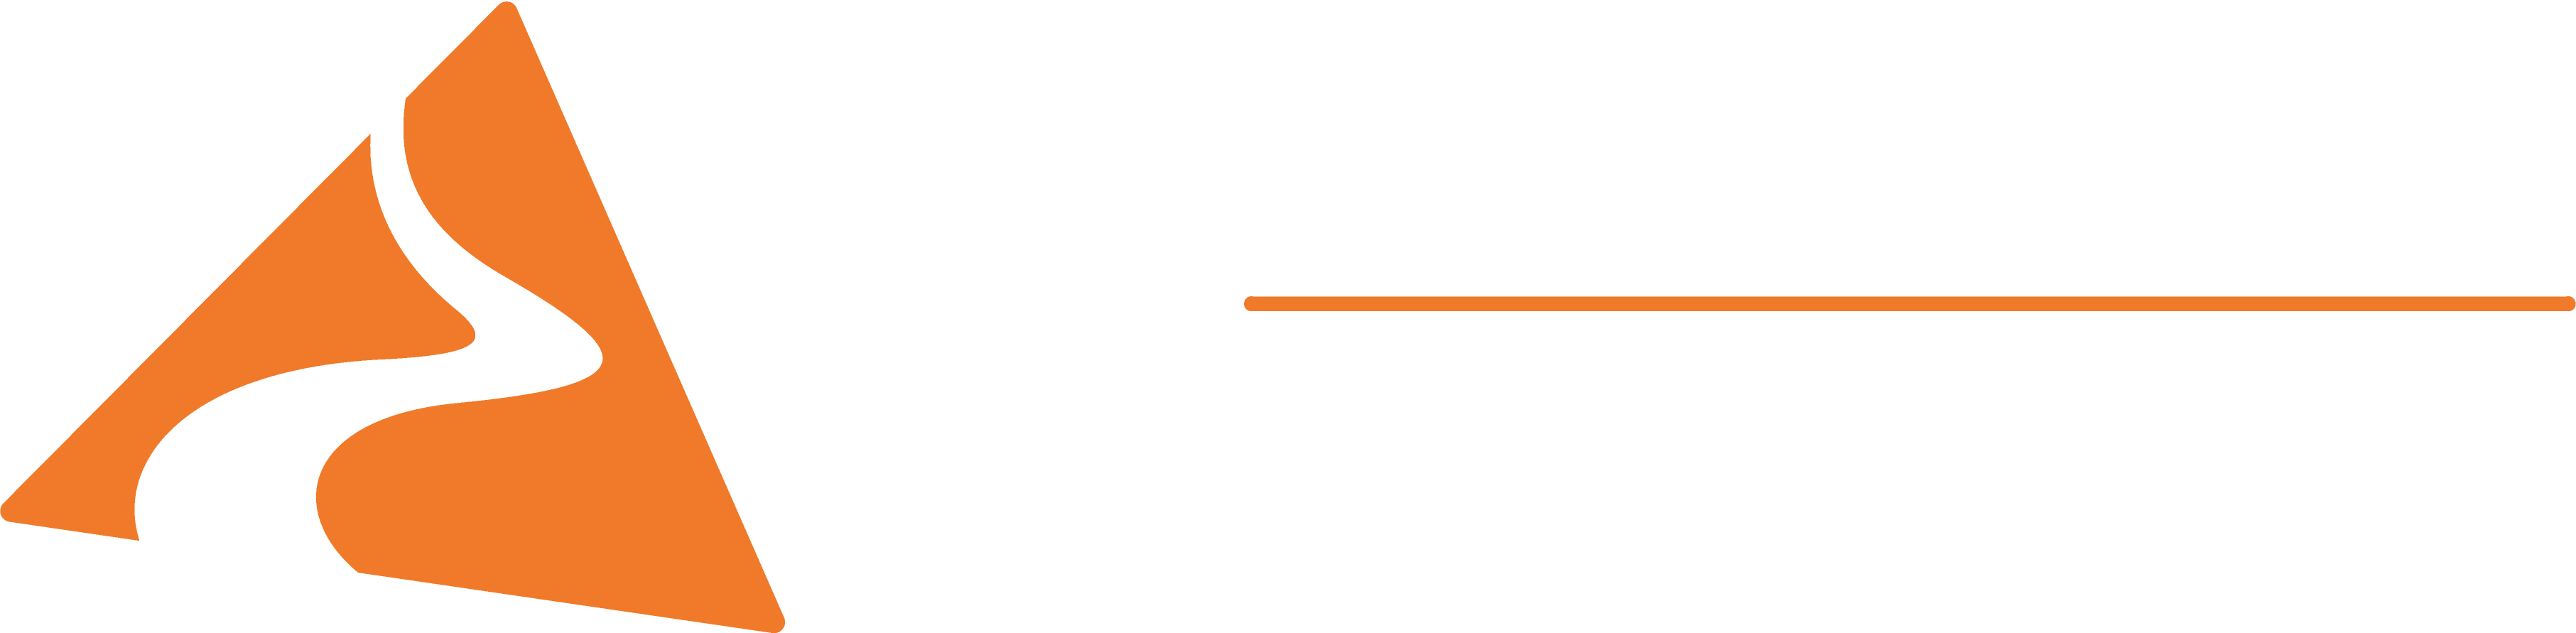 TFCC orange logo